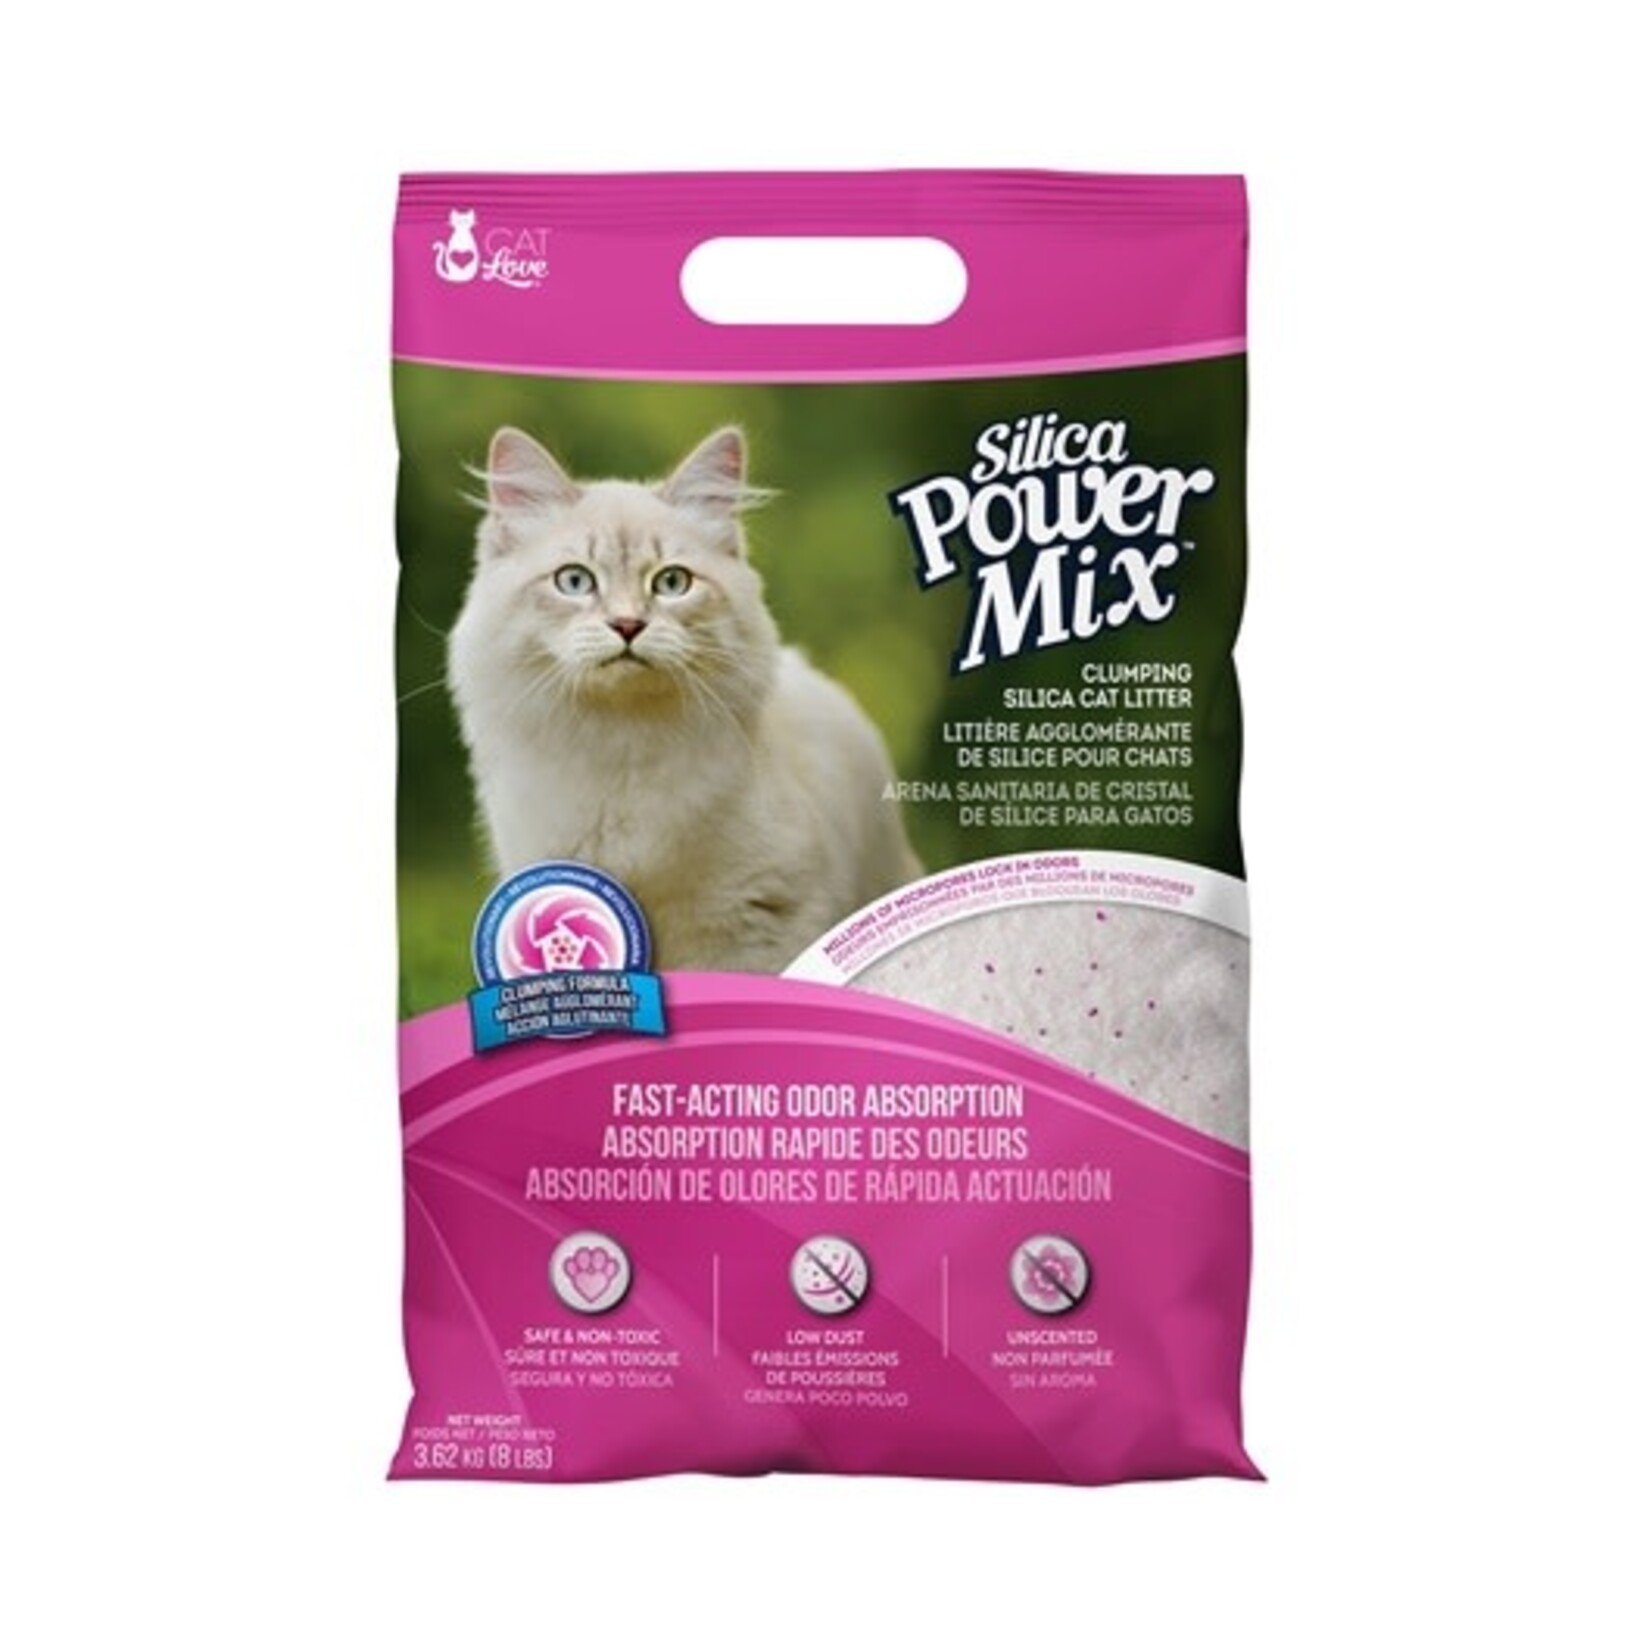 Cat love Litière agglomérante de silice Power Mix Cat Love – 3,62 kg (8 lb)